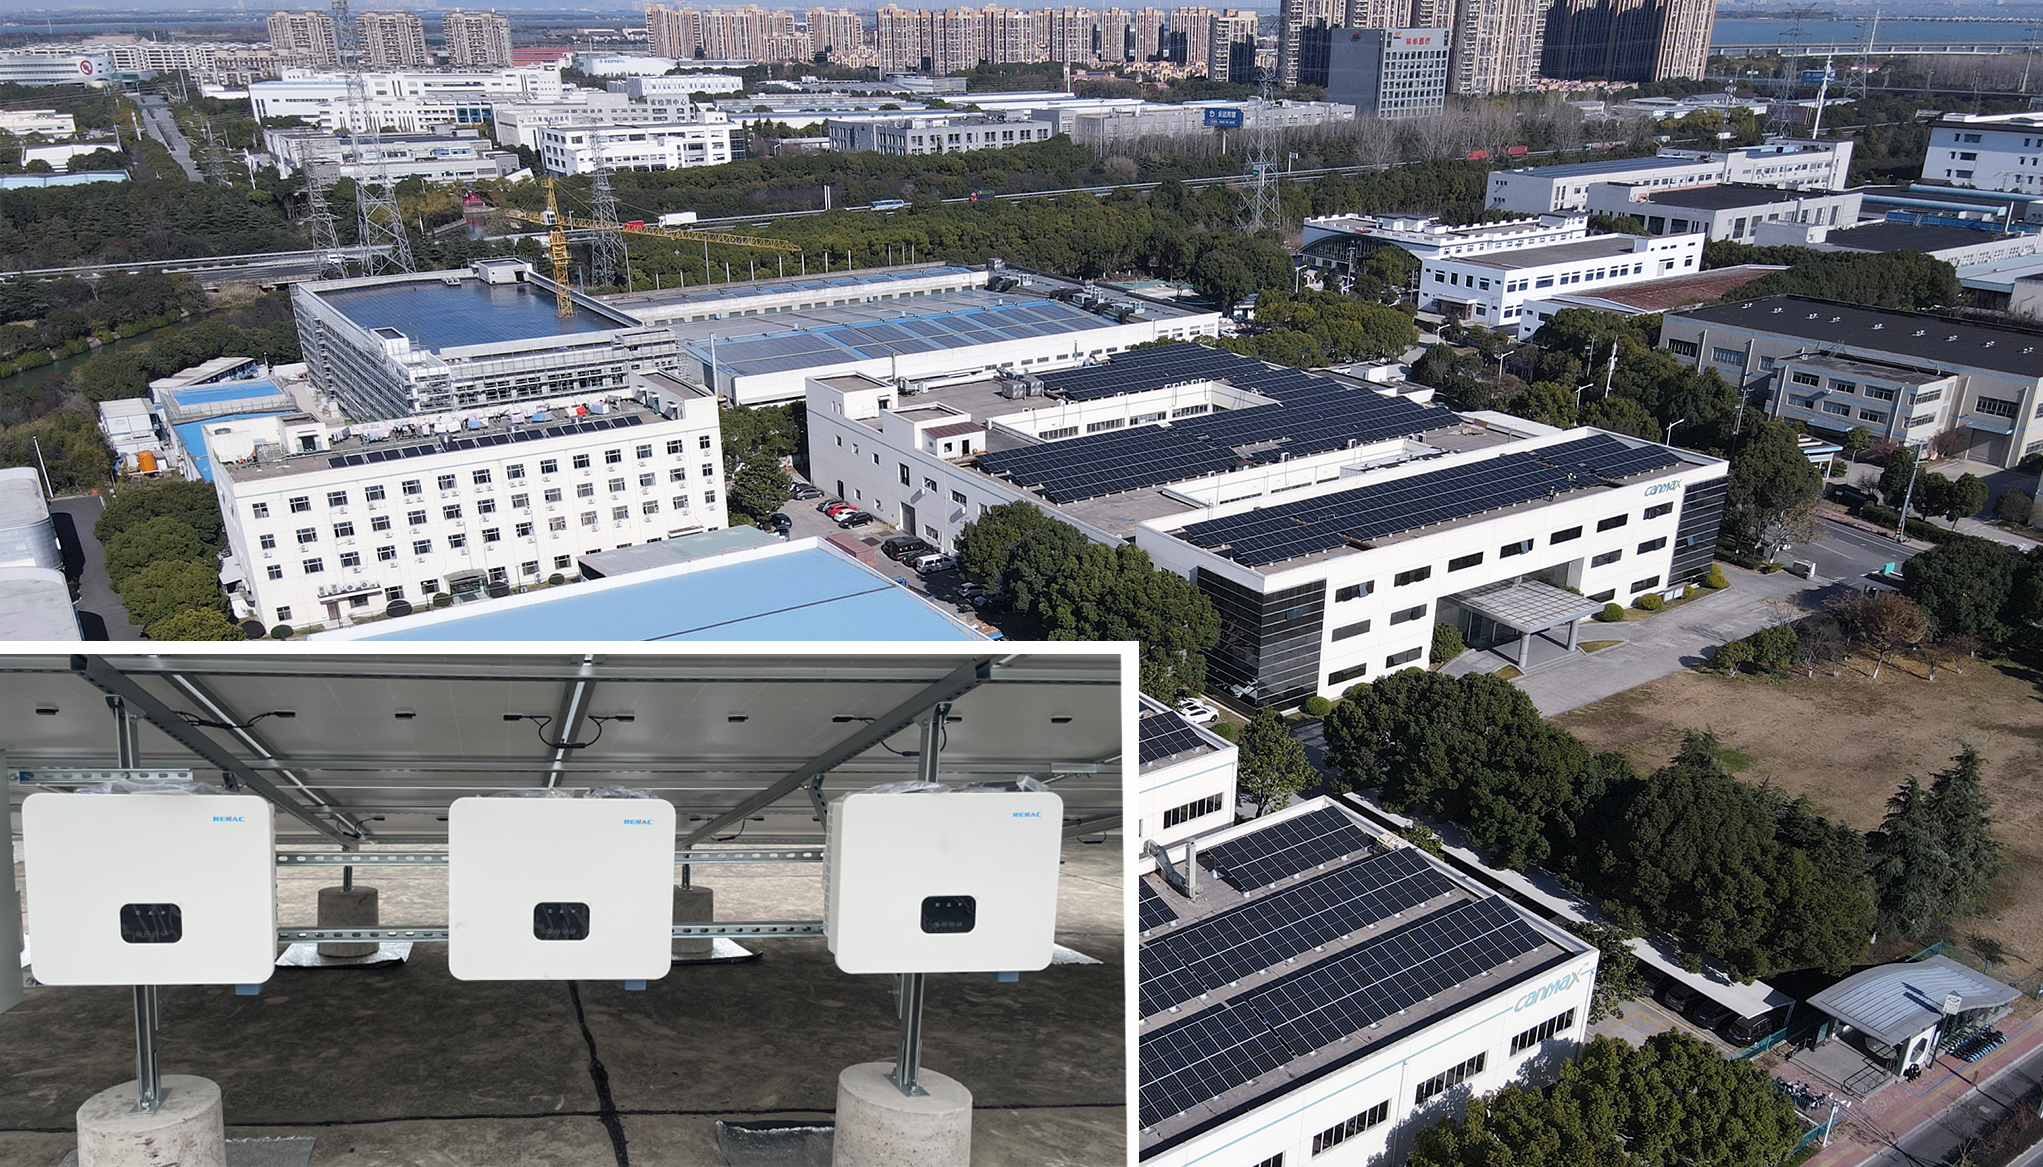 Nowa komercyjna elektrownia fotowoltaiczna o mocy 1 MW, własnej inwestycji RENAC, została pomyślnie oddana do użytku w Suzhou w Chinach!